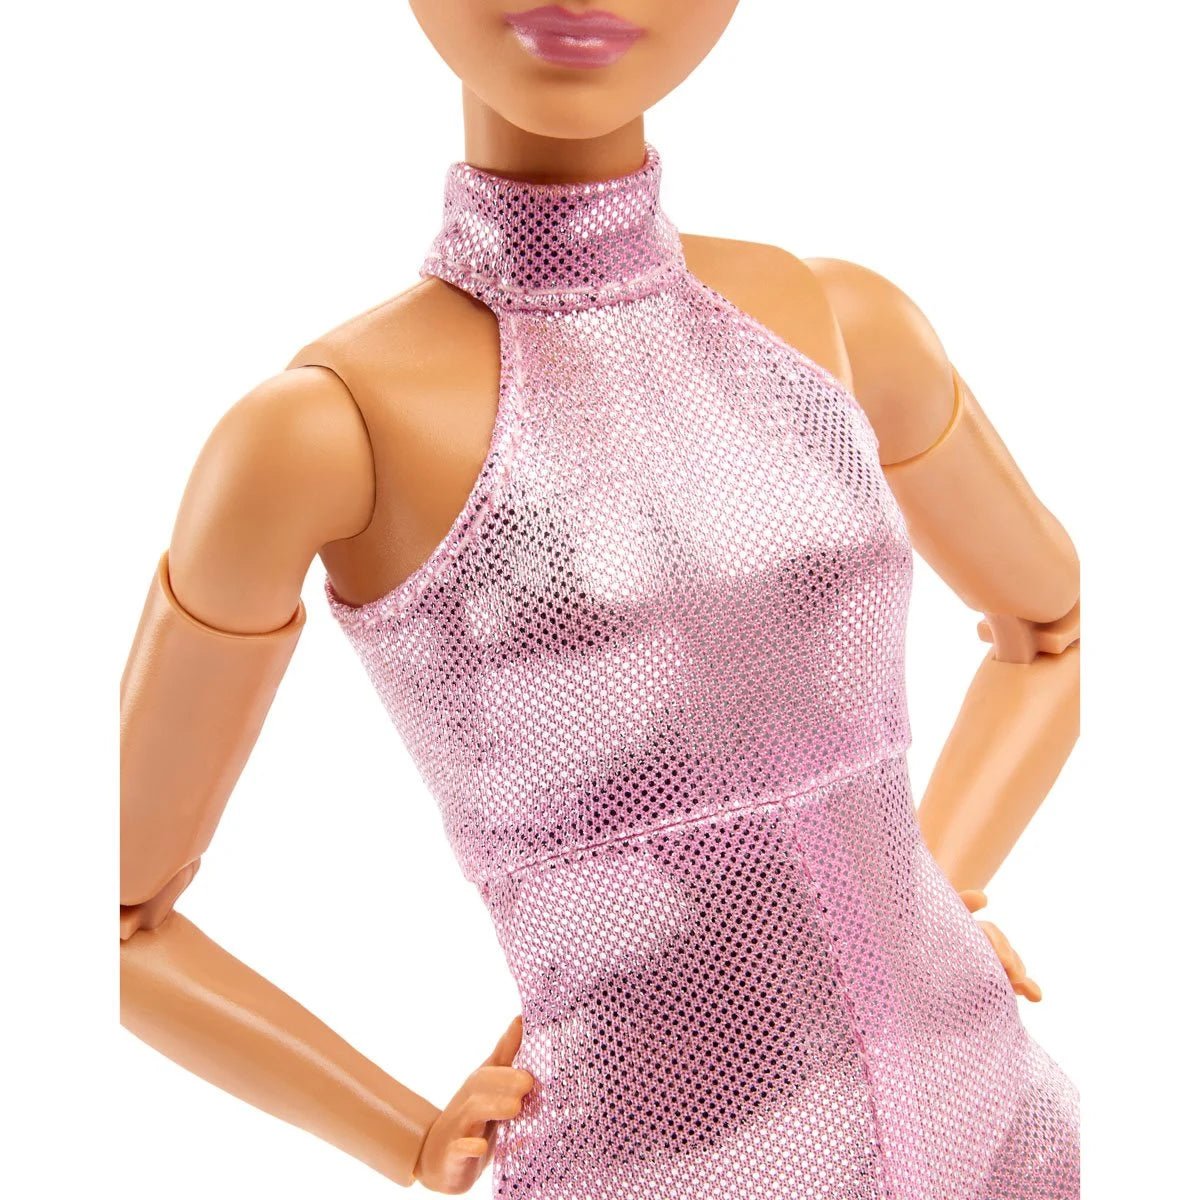 Barbie Signature Barbie Looks Doll #22 (Petite, Short Auburn Hair) - Simon's Collectibles